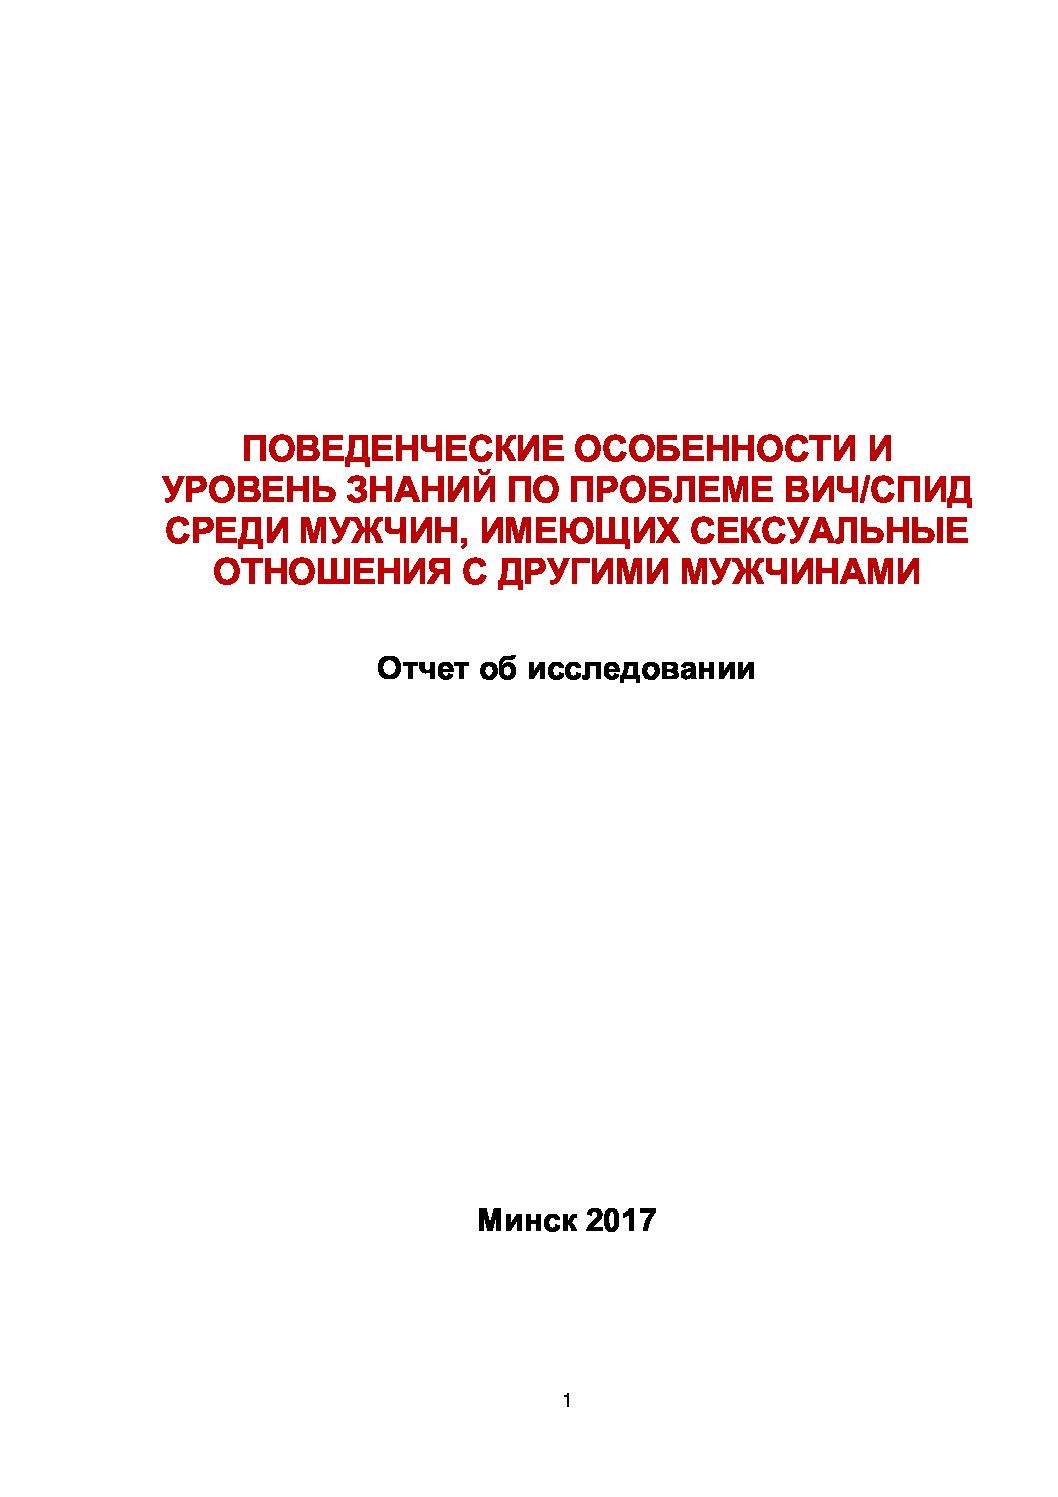 Поведенческие особенности и уровень знаний по проблеме ВИЧ/СПИД среди МСМ в Беларуси, 2017